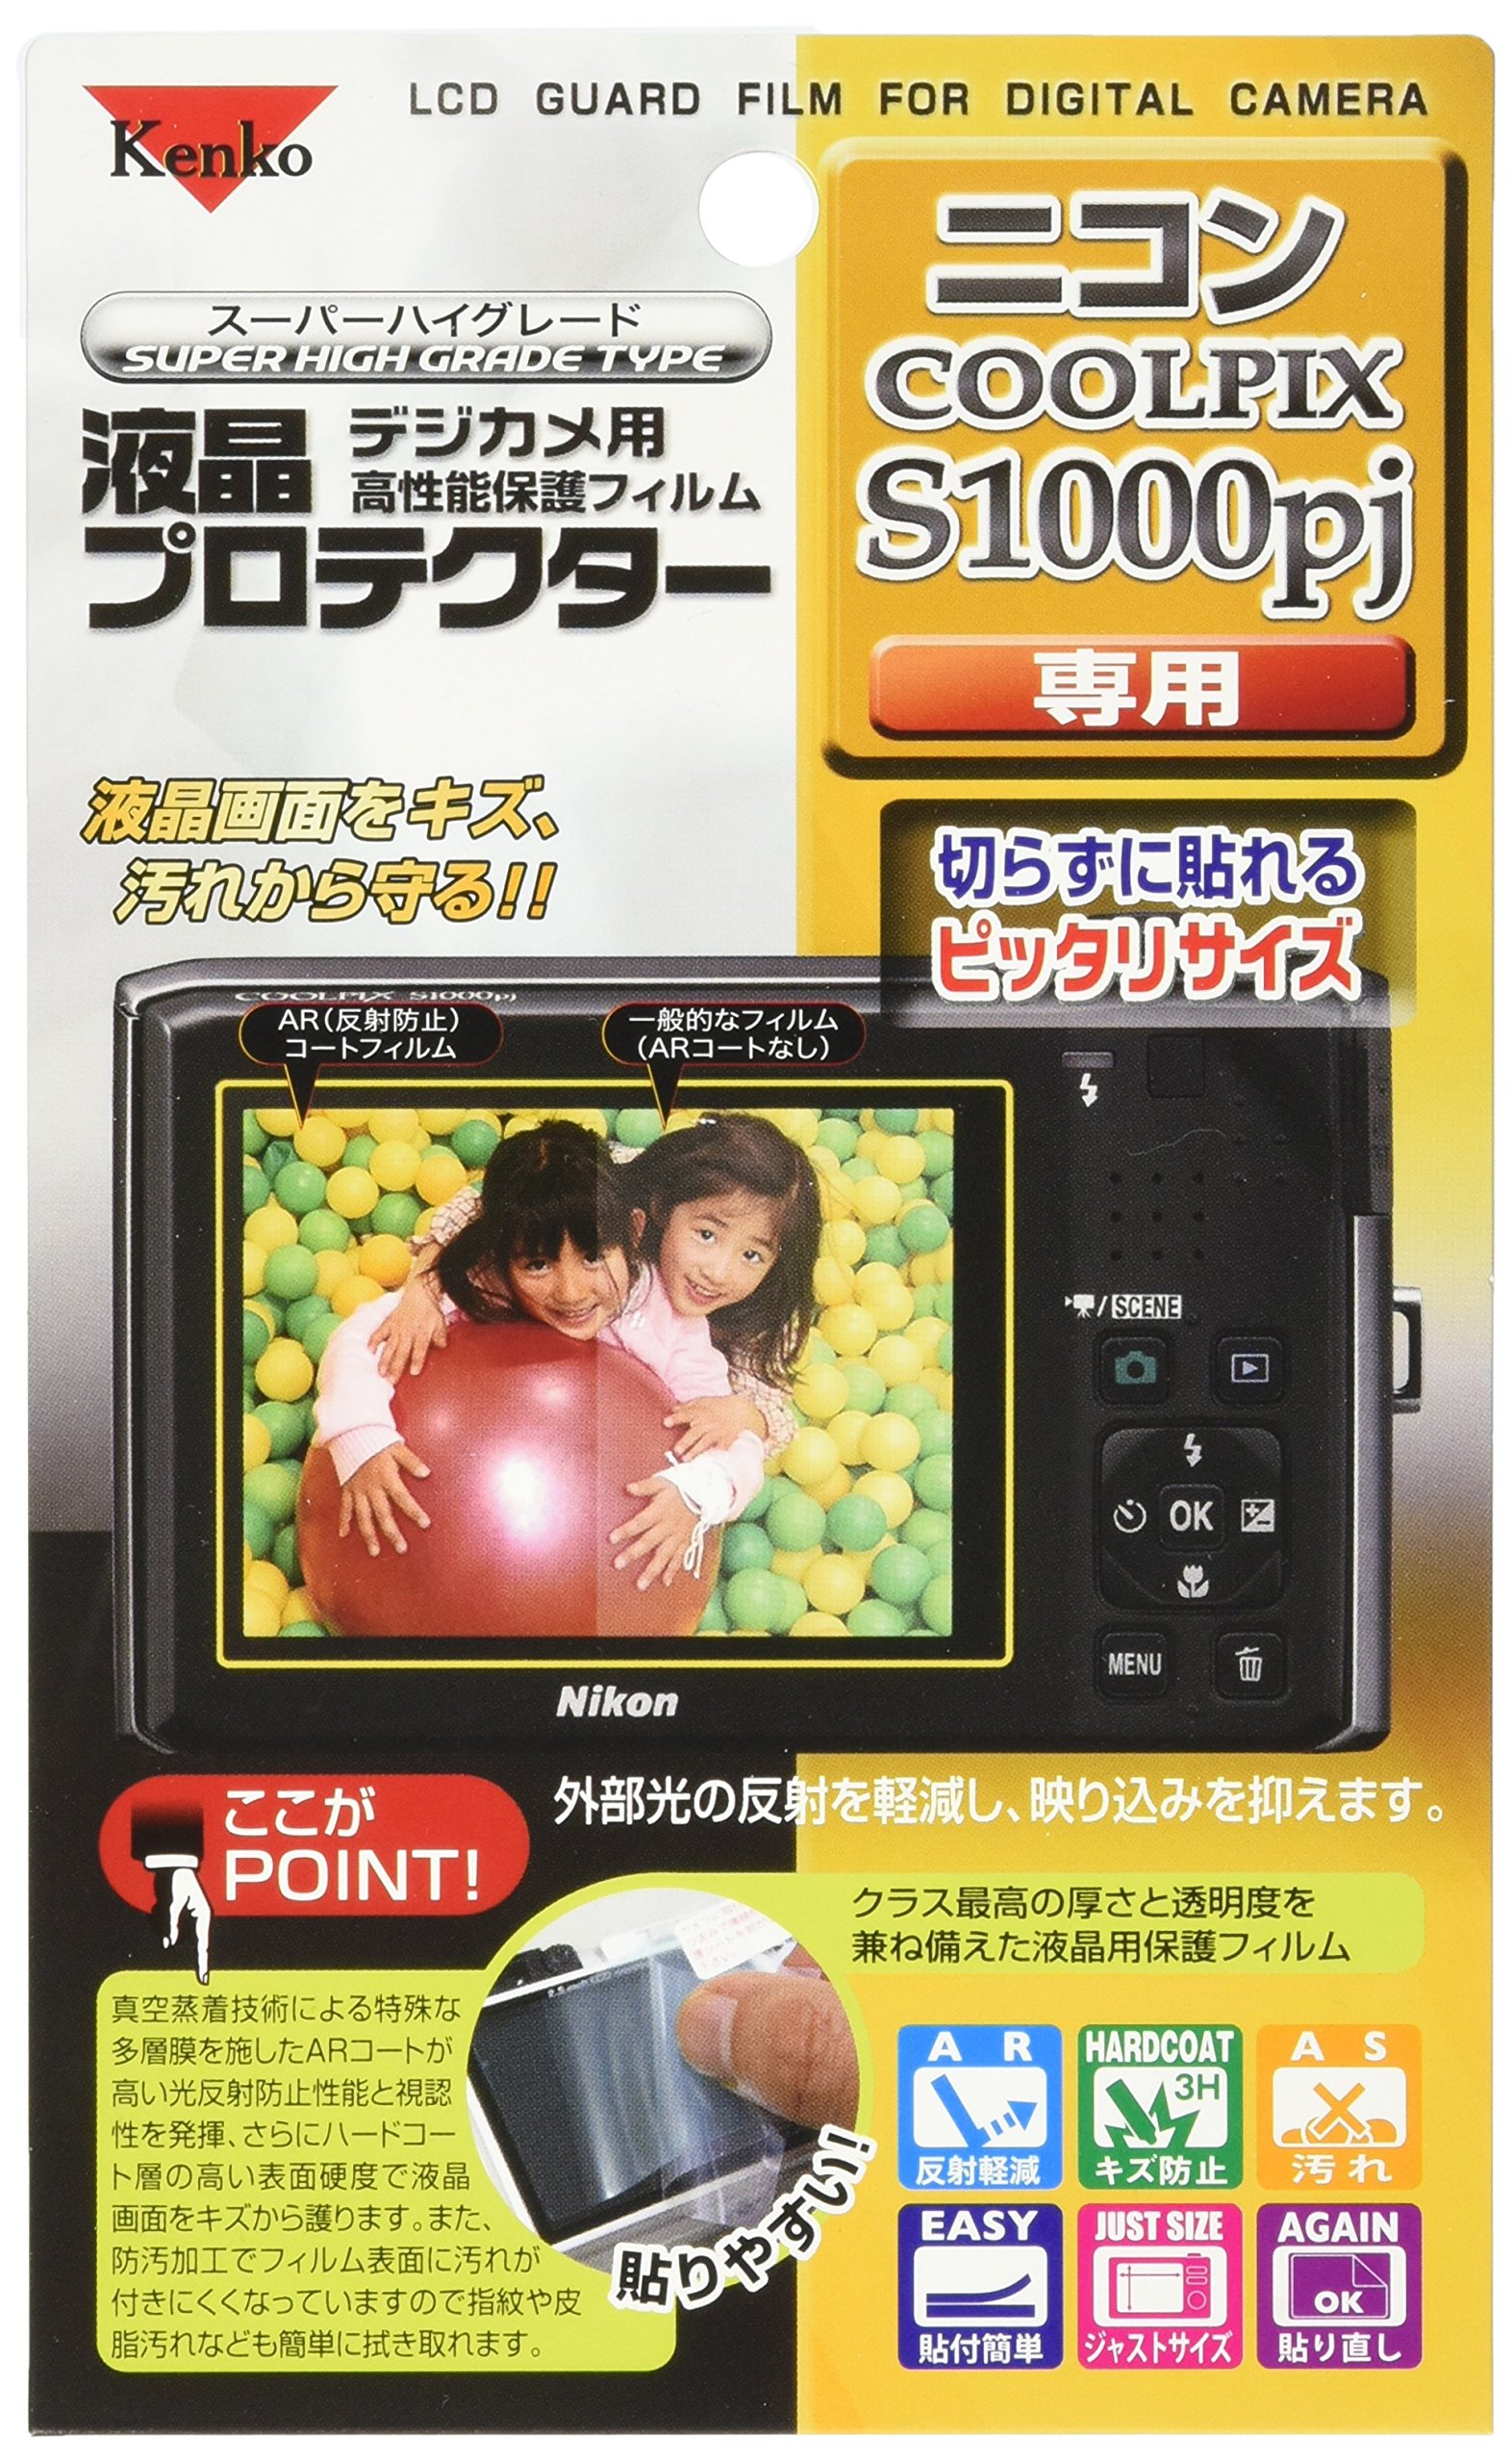 Kenko 液晶保護フィルム 液晶プロテクター Nikon COOLPIX S1000pj用 KLP-NCPS1000